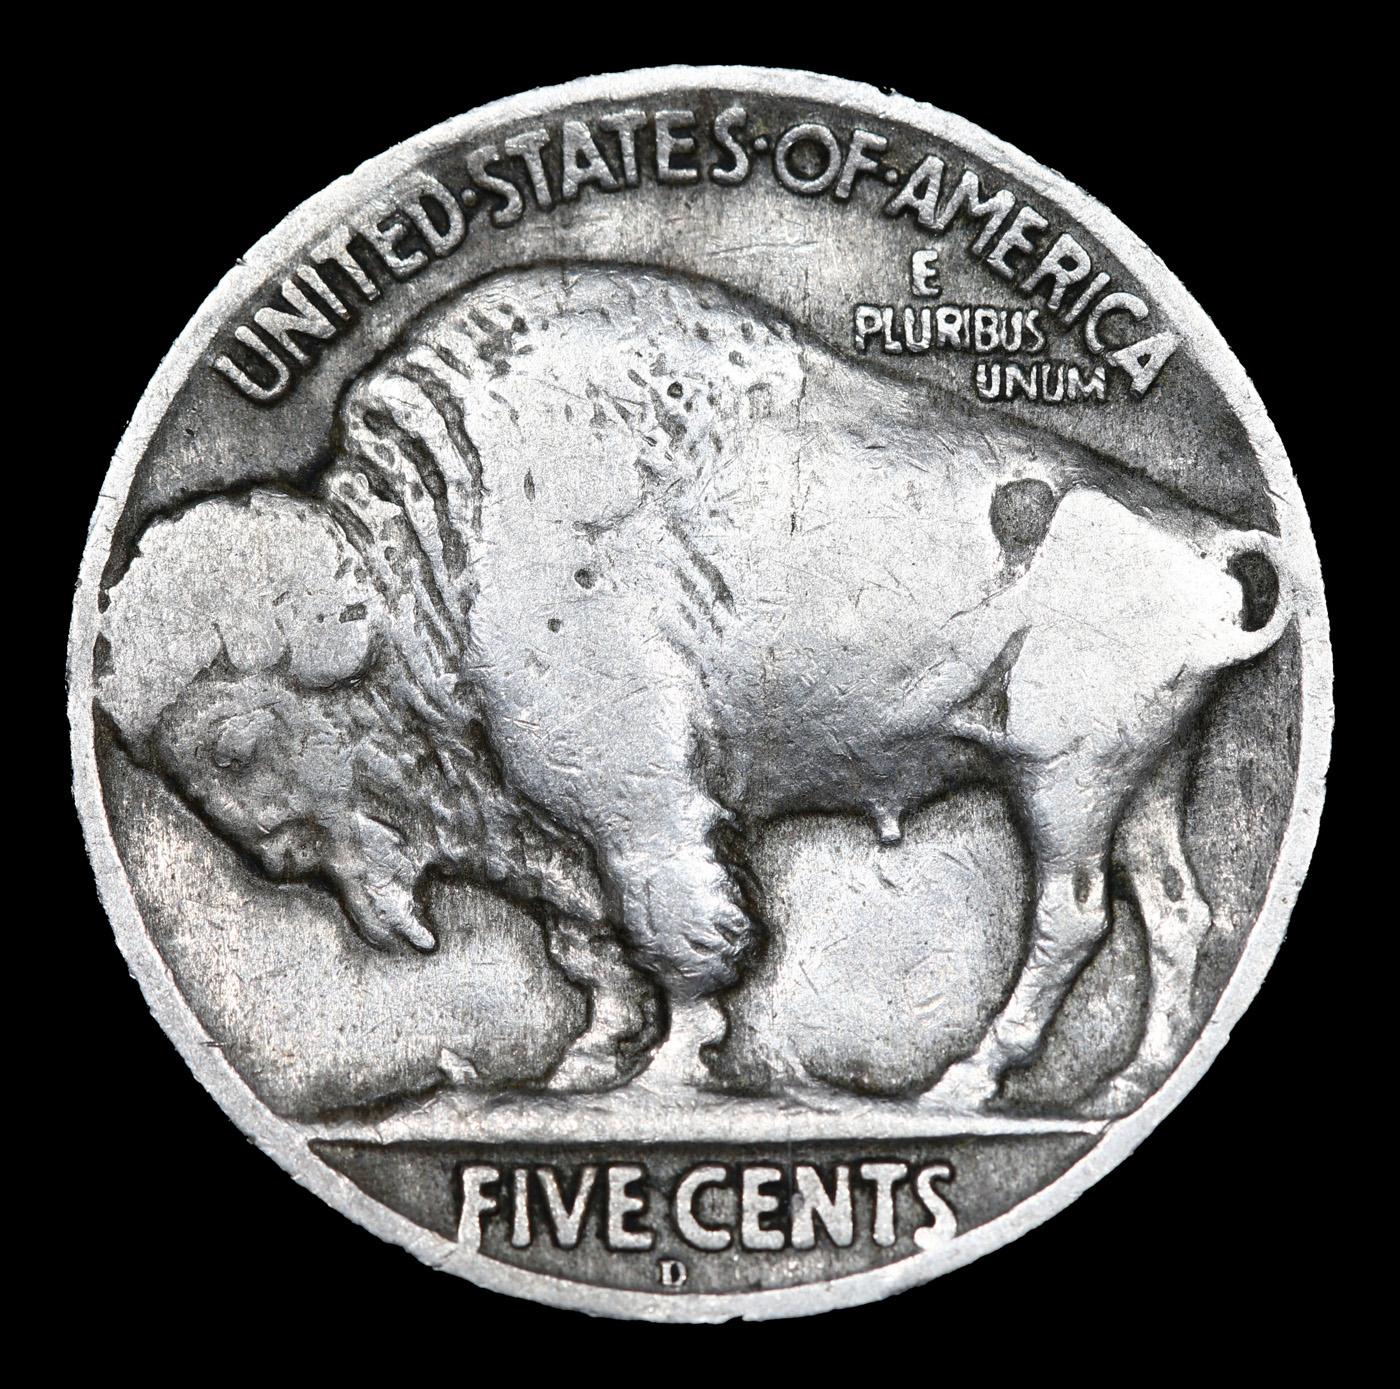 1920-d Buffalo Nickel 5c Grades f+